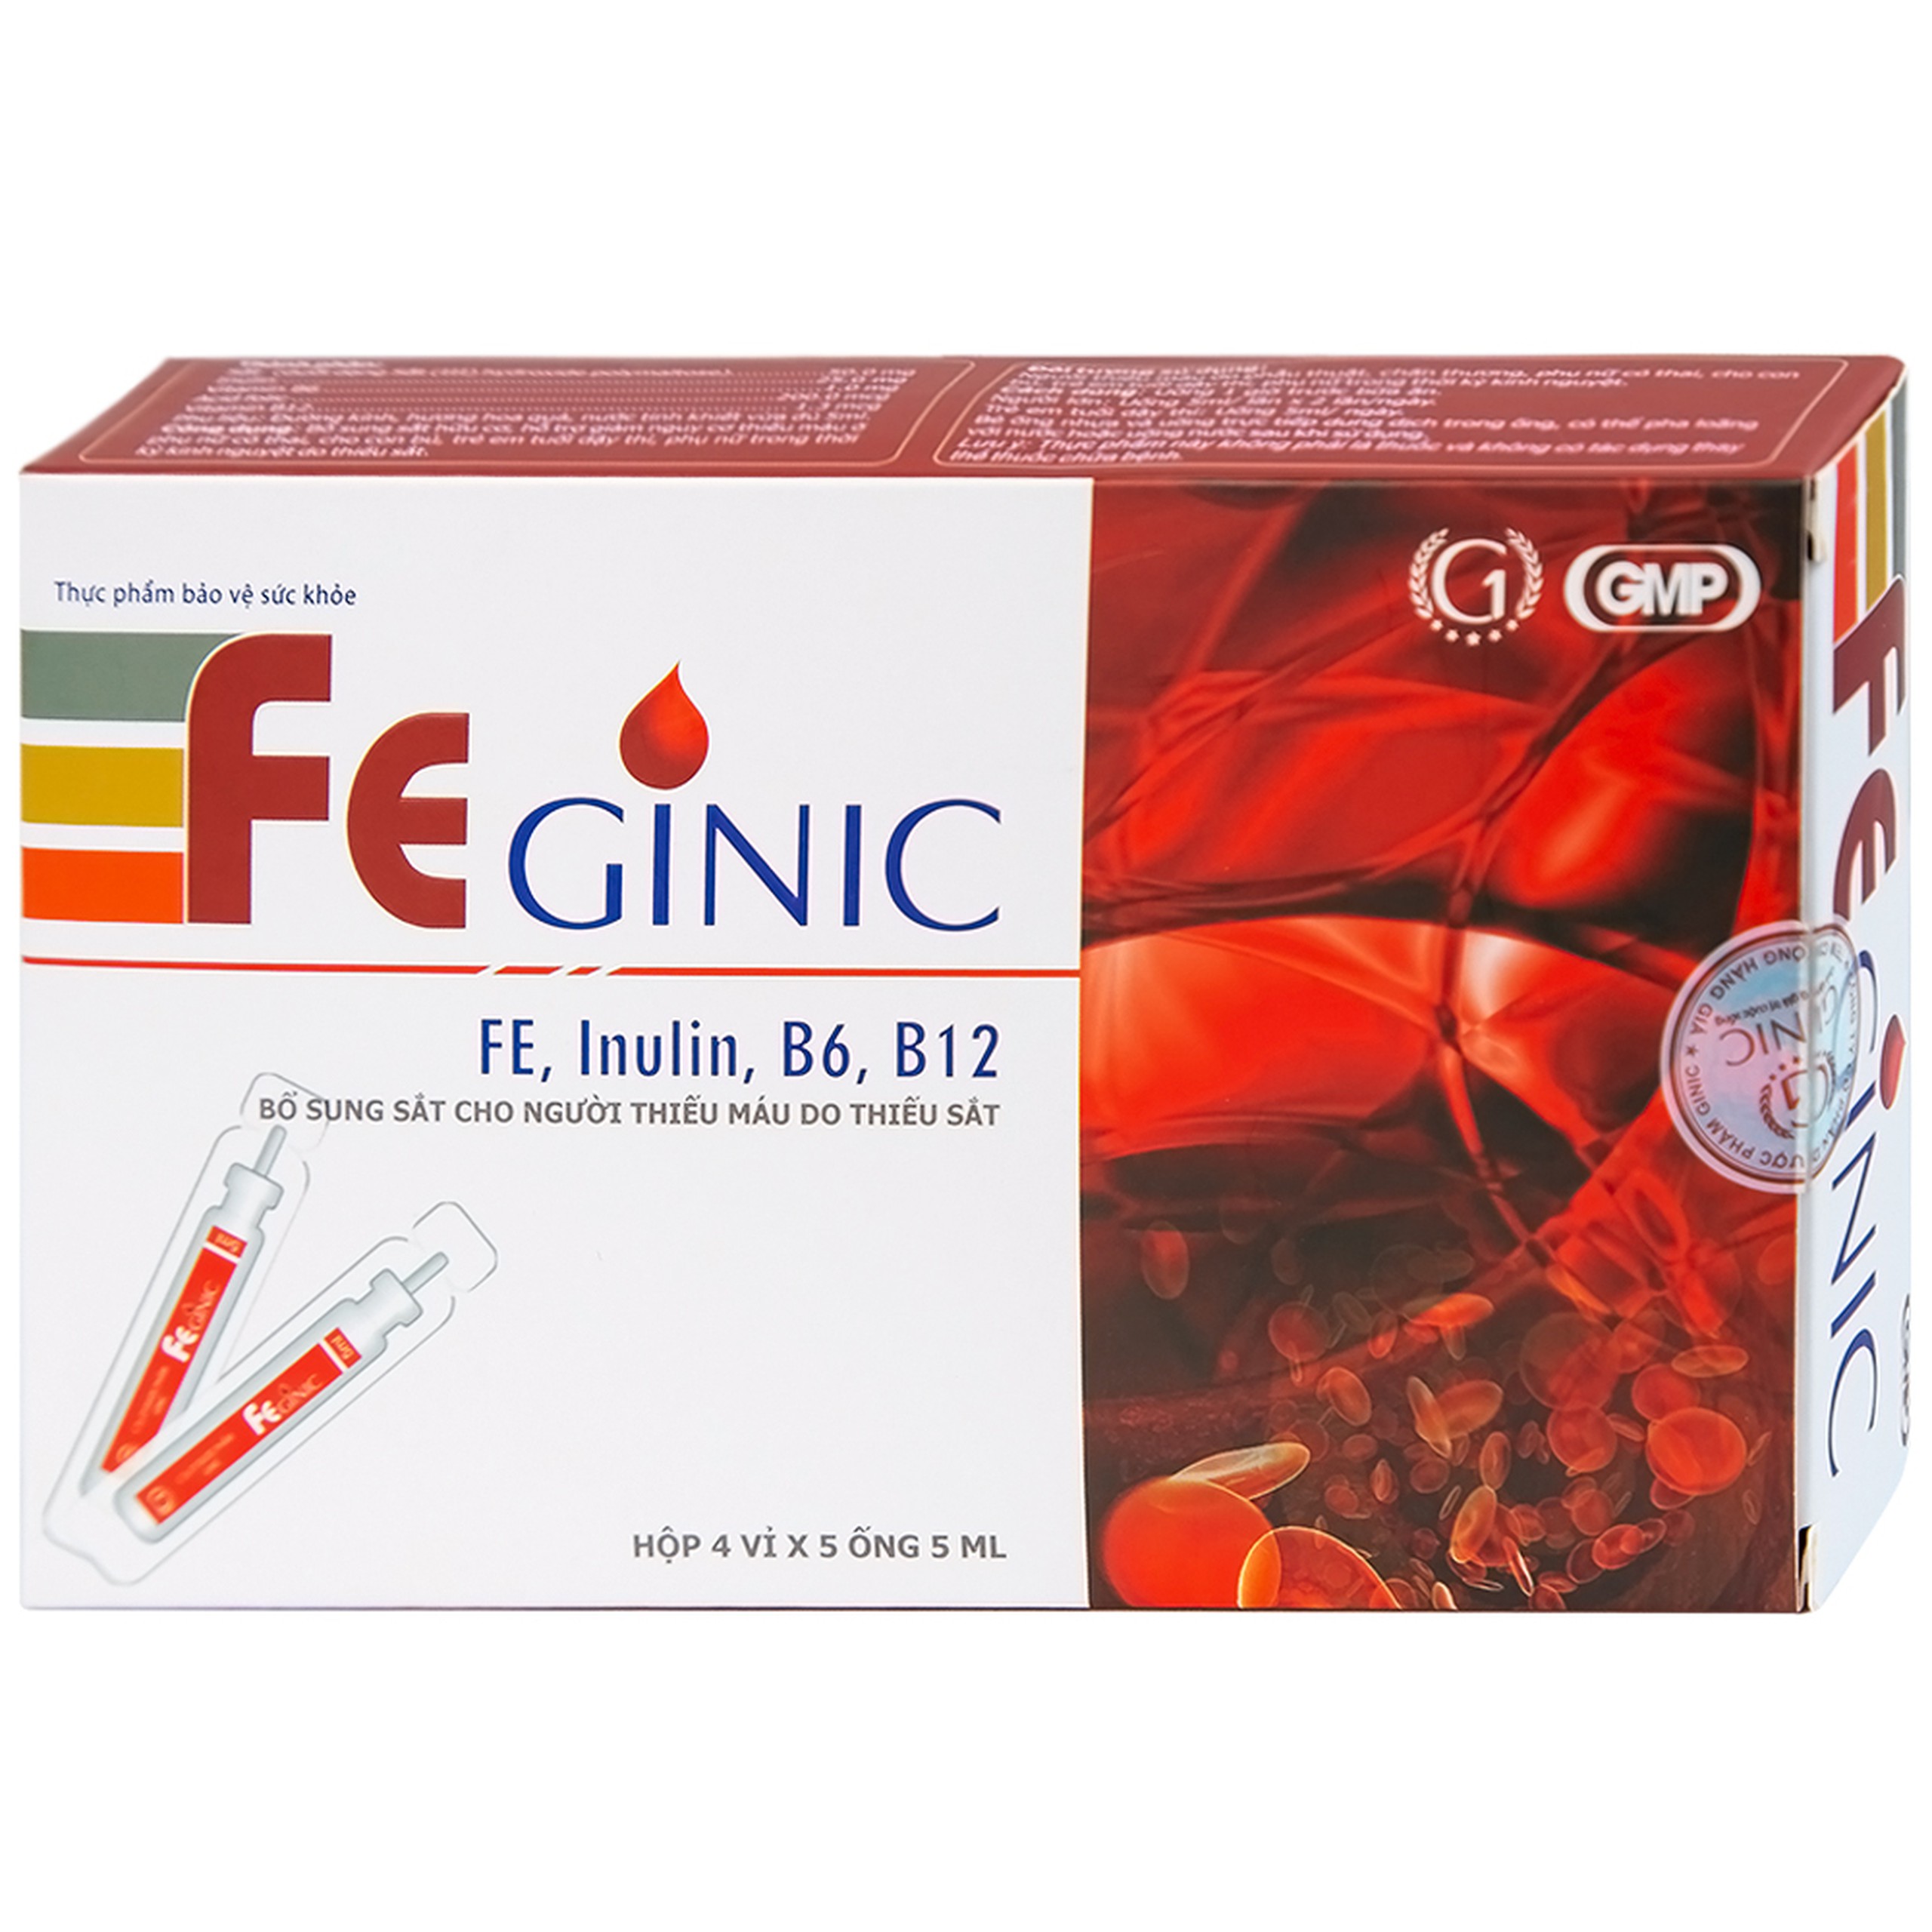 Ống uống Feginic bổ sung sắt hữu cơ, hỗ trợ giảm nguy cơ thiếu máu (20 ống x 5ml)